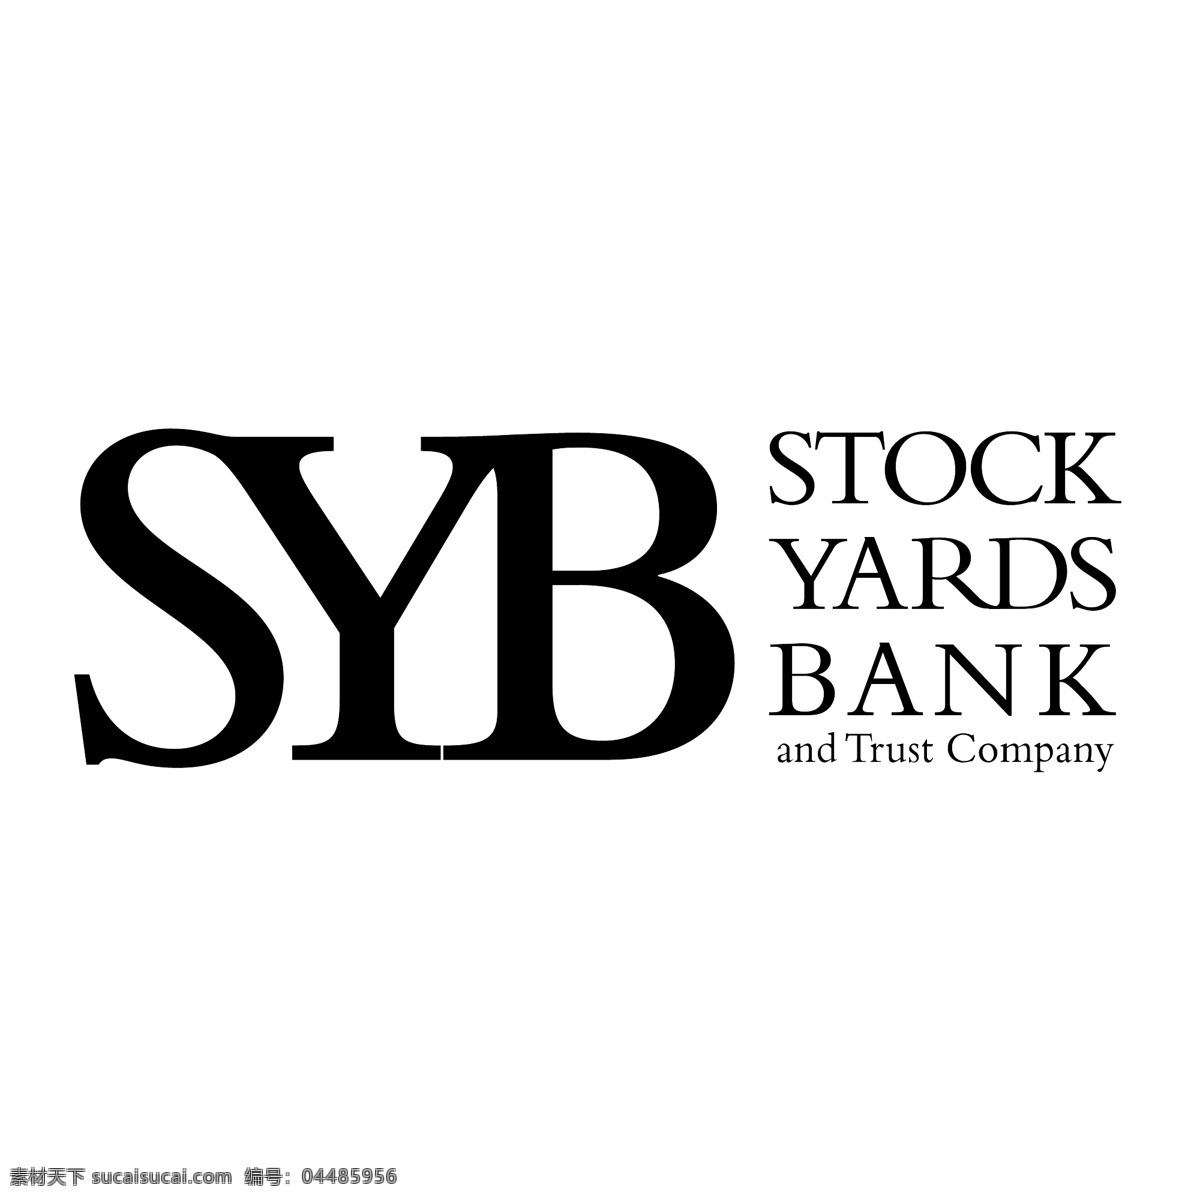 syb 矢量标志下载 免费矢量标识 商标 品牌标识 标识 矢量 免费 品牌 公司 白色